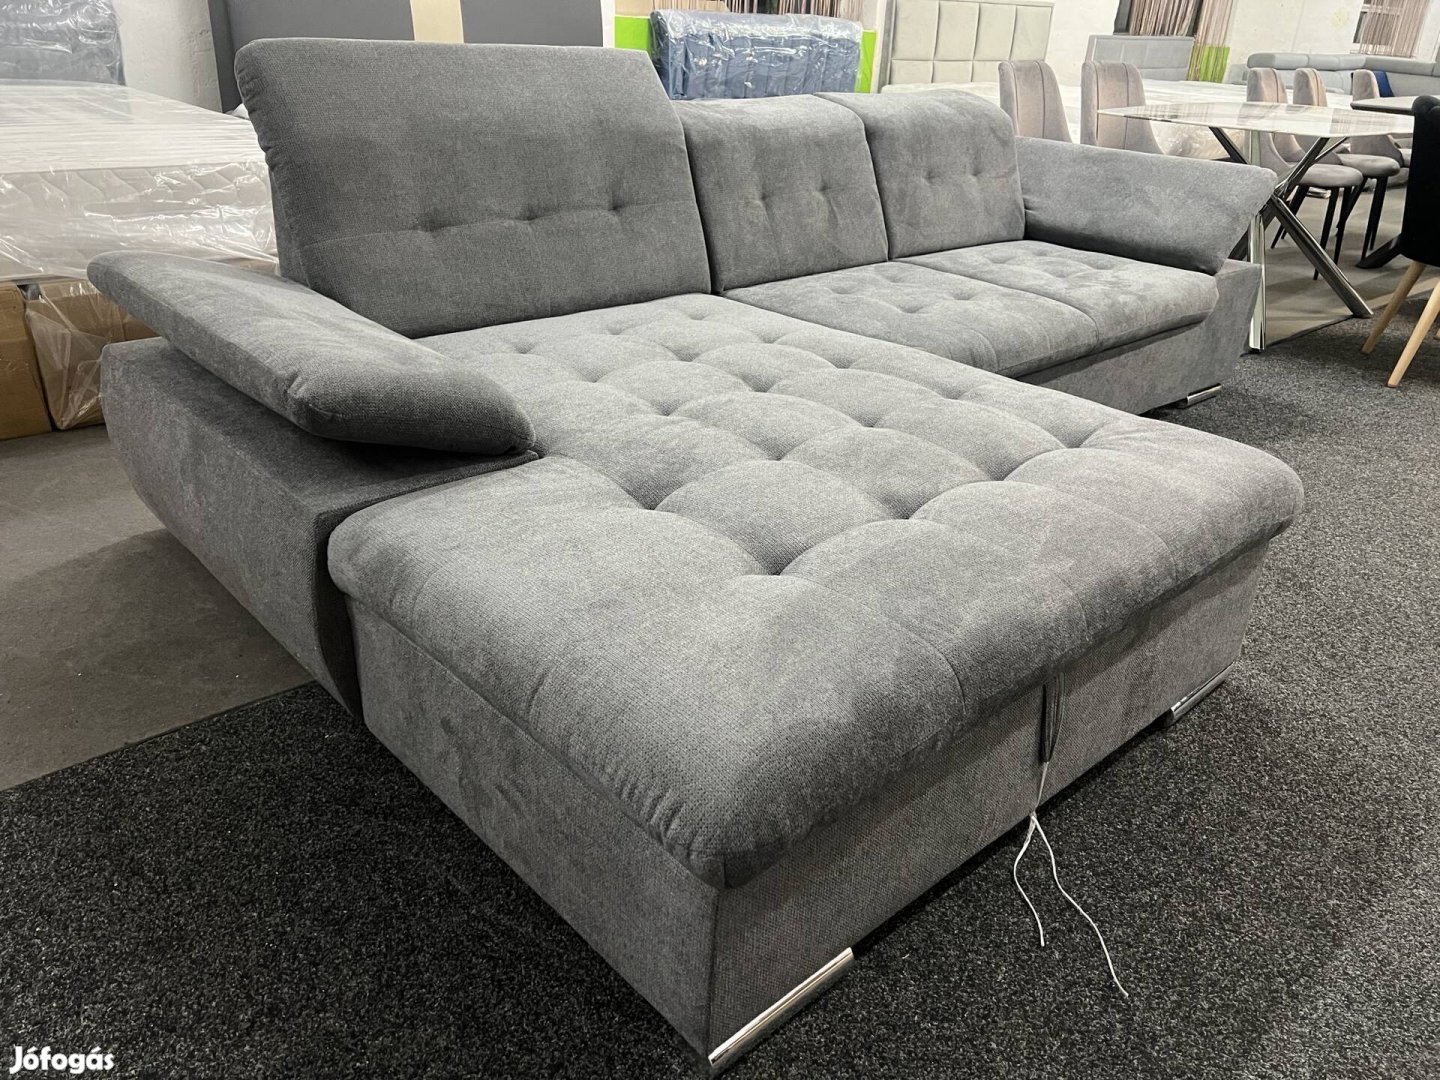 Masszív 2.90s Relax ágyazhato új kanapé több színben eladó 